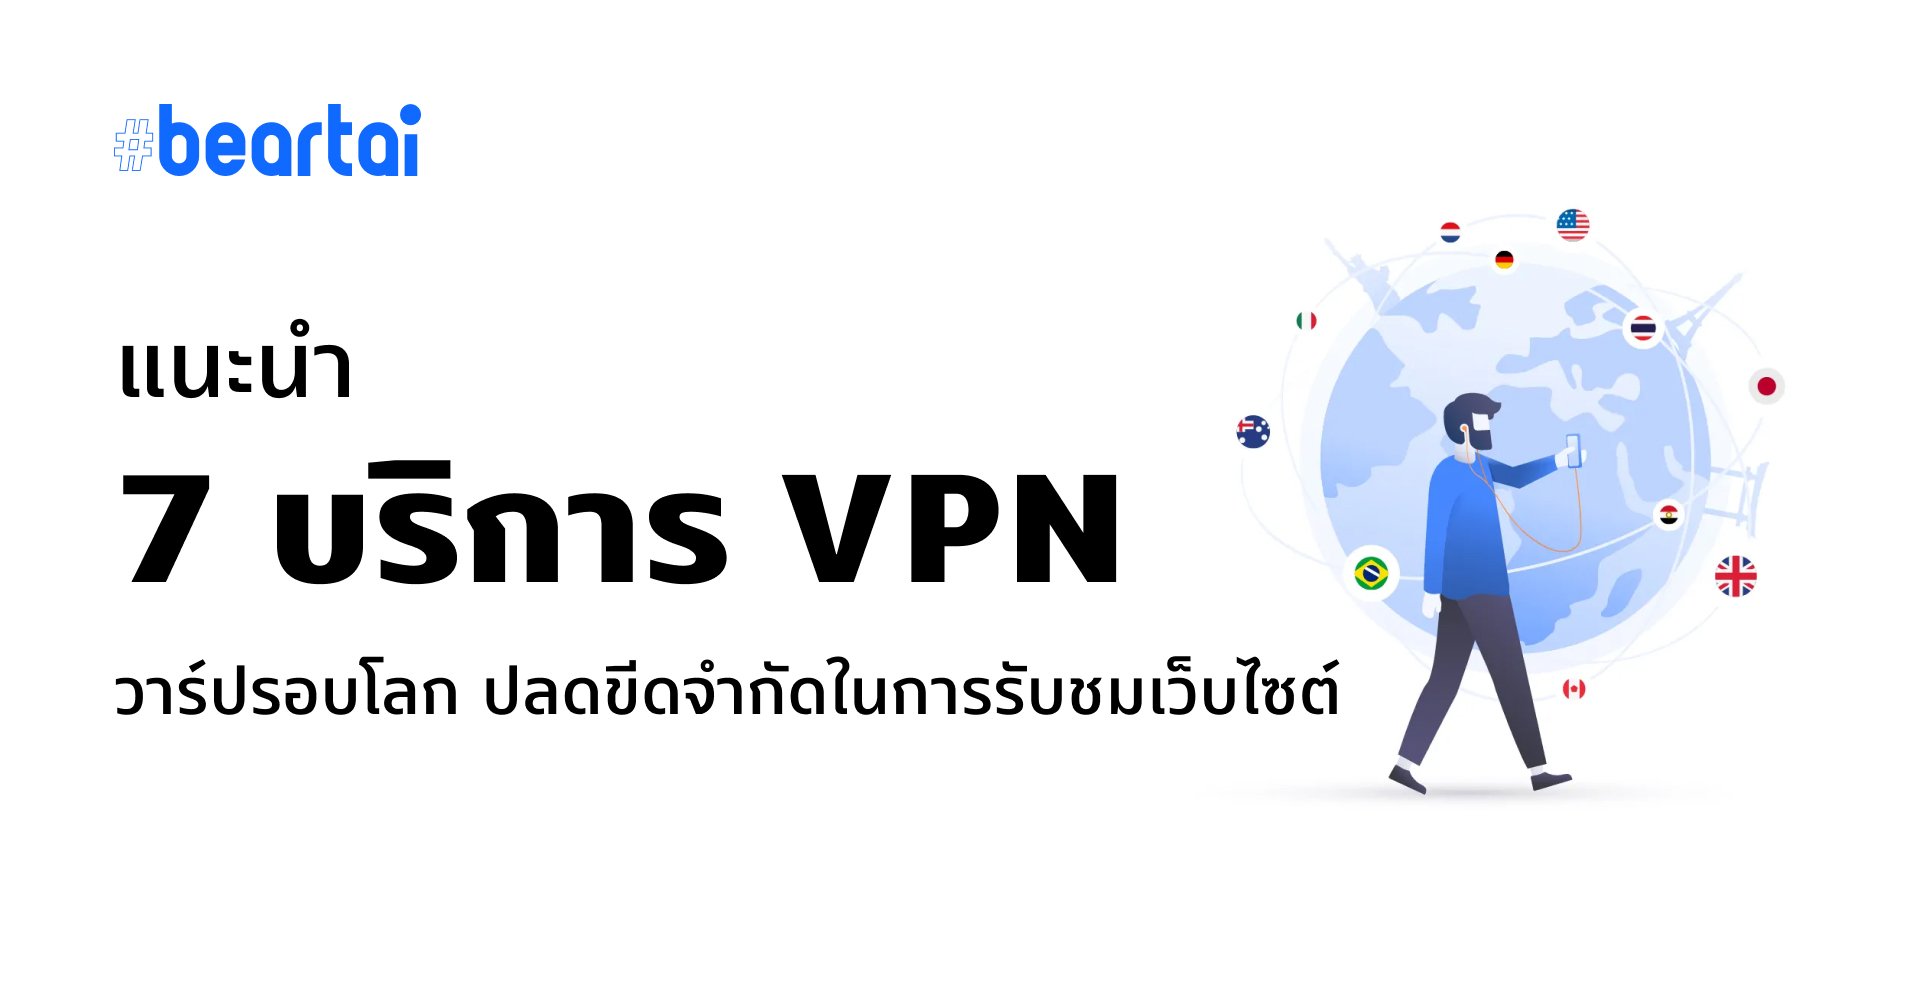 มุดลงดินเที่ยวต่างประเทศ!! แนะนำ 7 บริการ VPN ชื่อดังวาร์ปไปได้รอบโลก